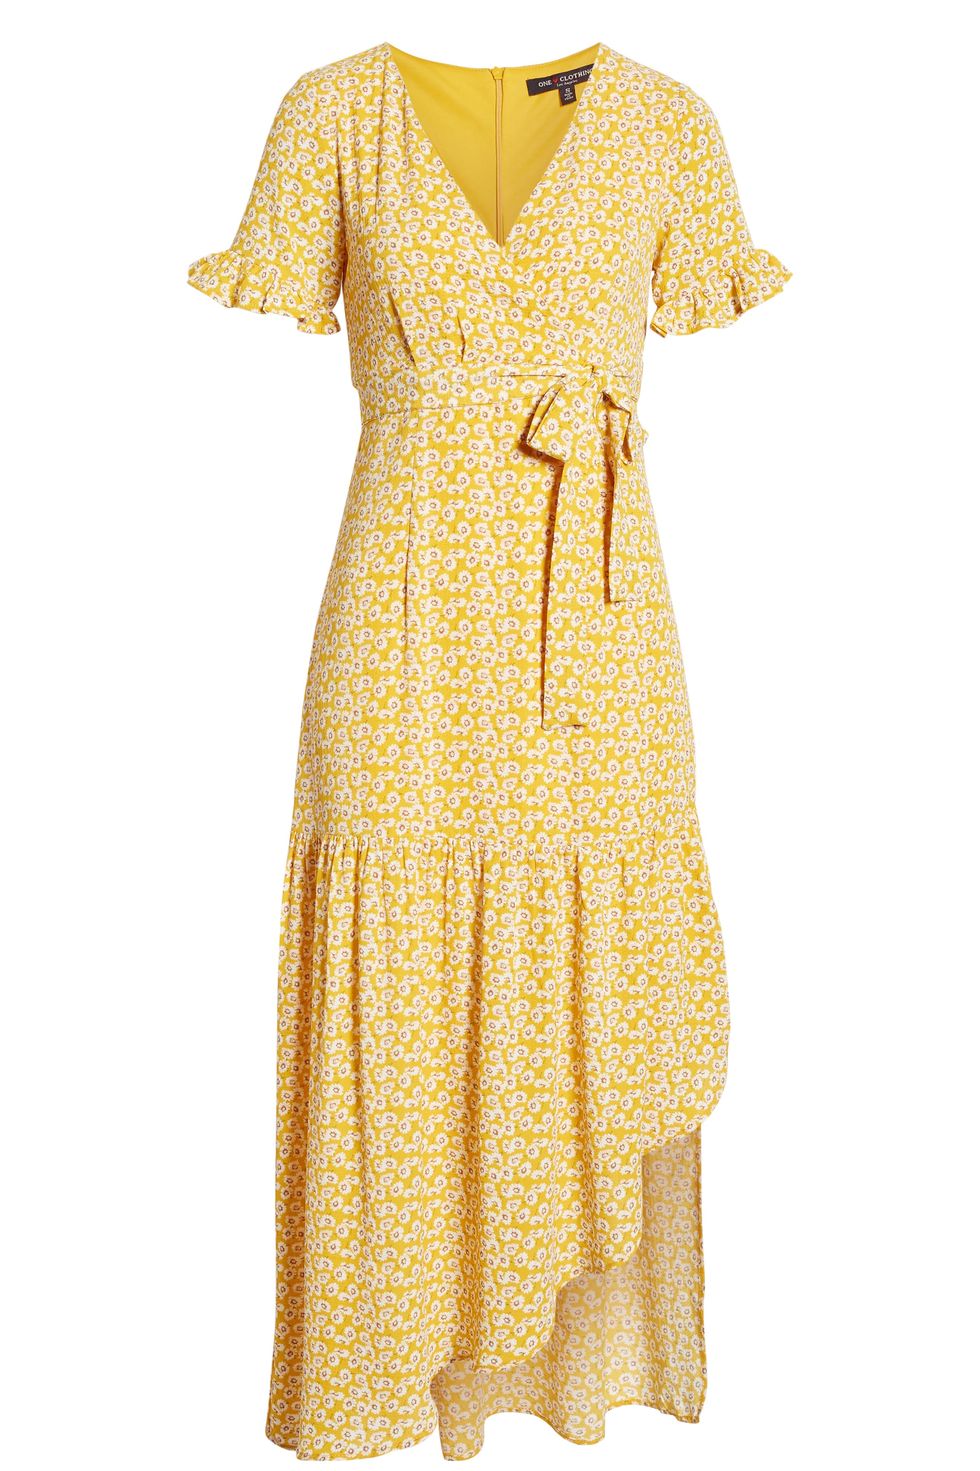 Pippa Middleton Wears a Yellow Wrap Dress to Wimbledon Semi-Final